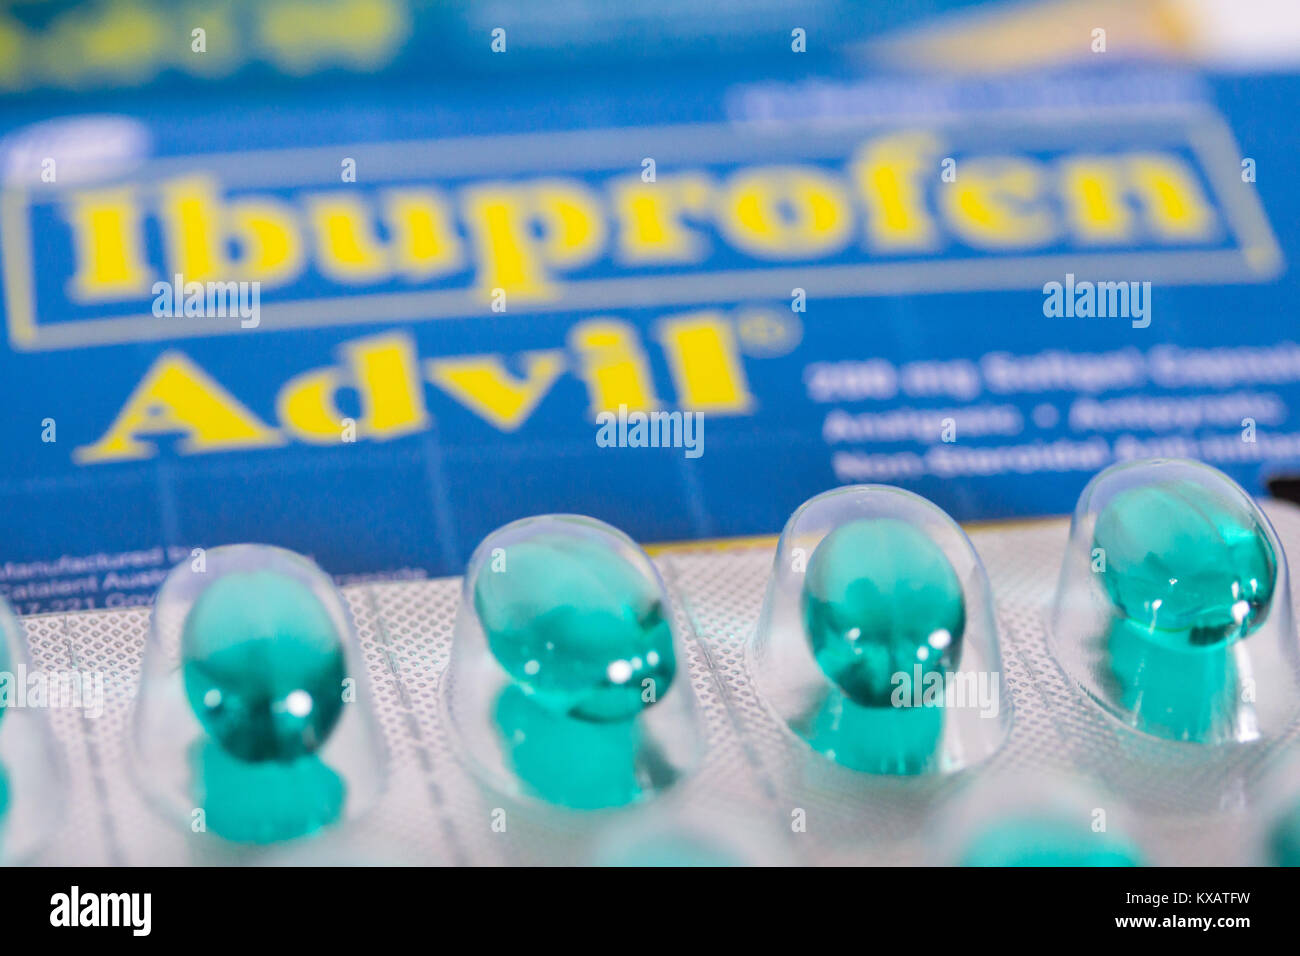 Green Advil capsule,(ibuprofene).Un recente studio pubblicato nella rivista la procedura dell'Accademia nazionale delle scienze rivendicazioni che ibuprofene ,(Advil & Motrin due prodotti di marca),ha un impatto negativo su testicoli di giovani uomini.Lo studio relazione afferma che quando prendere ibuprofene in dosi che potrebbero essere utilizzati dagli atleti, un campione di giovani uomini sviluppato una condizione ormonale che potrebbe iniziare, se non a tutti, durante il medioevo. Questa condizione è creduto di essere legati ad una ridotta fertilità. Foto Stock